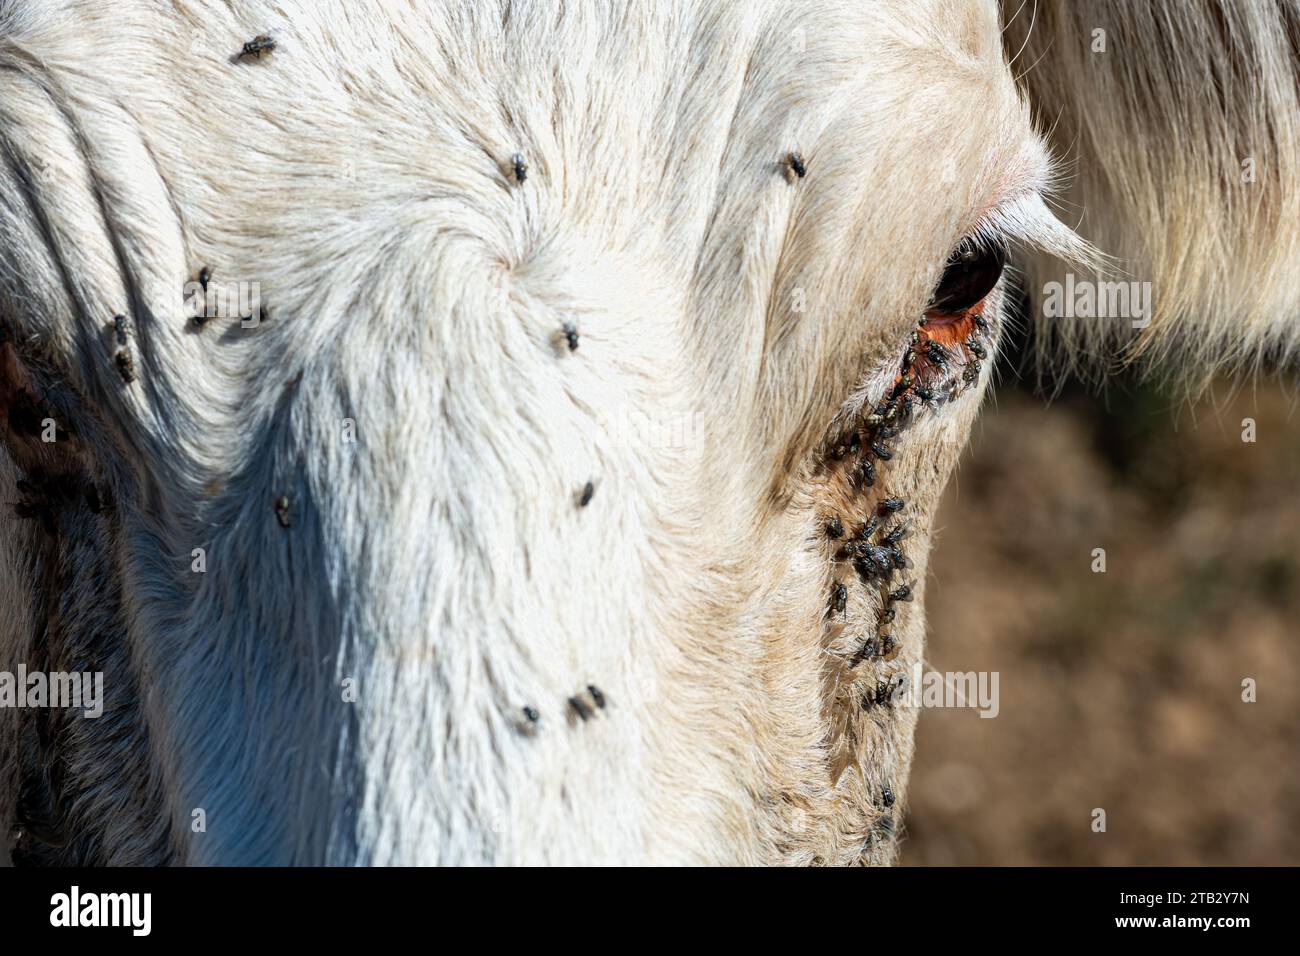 Mucca in campo in estate: Testa e occhio di mucca di Charolais infestati da mosche. Le mosche possono portare malattie come la cheratocongiuntivite bovina infettiva (IBK Foto Stock